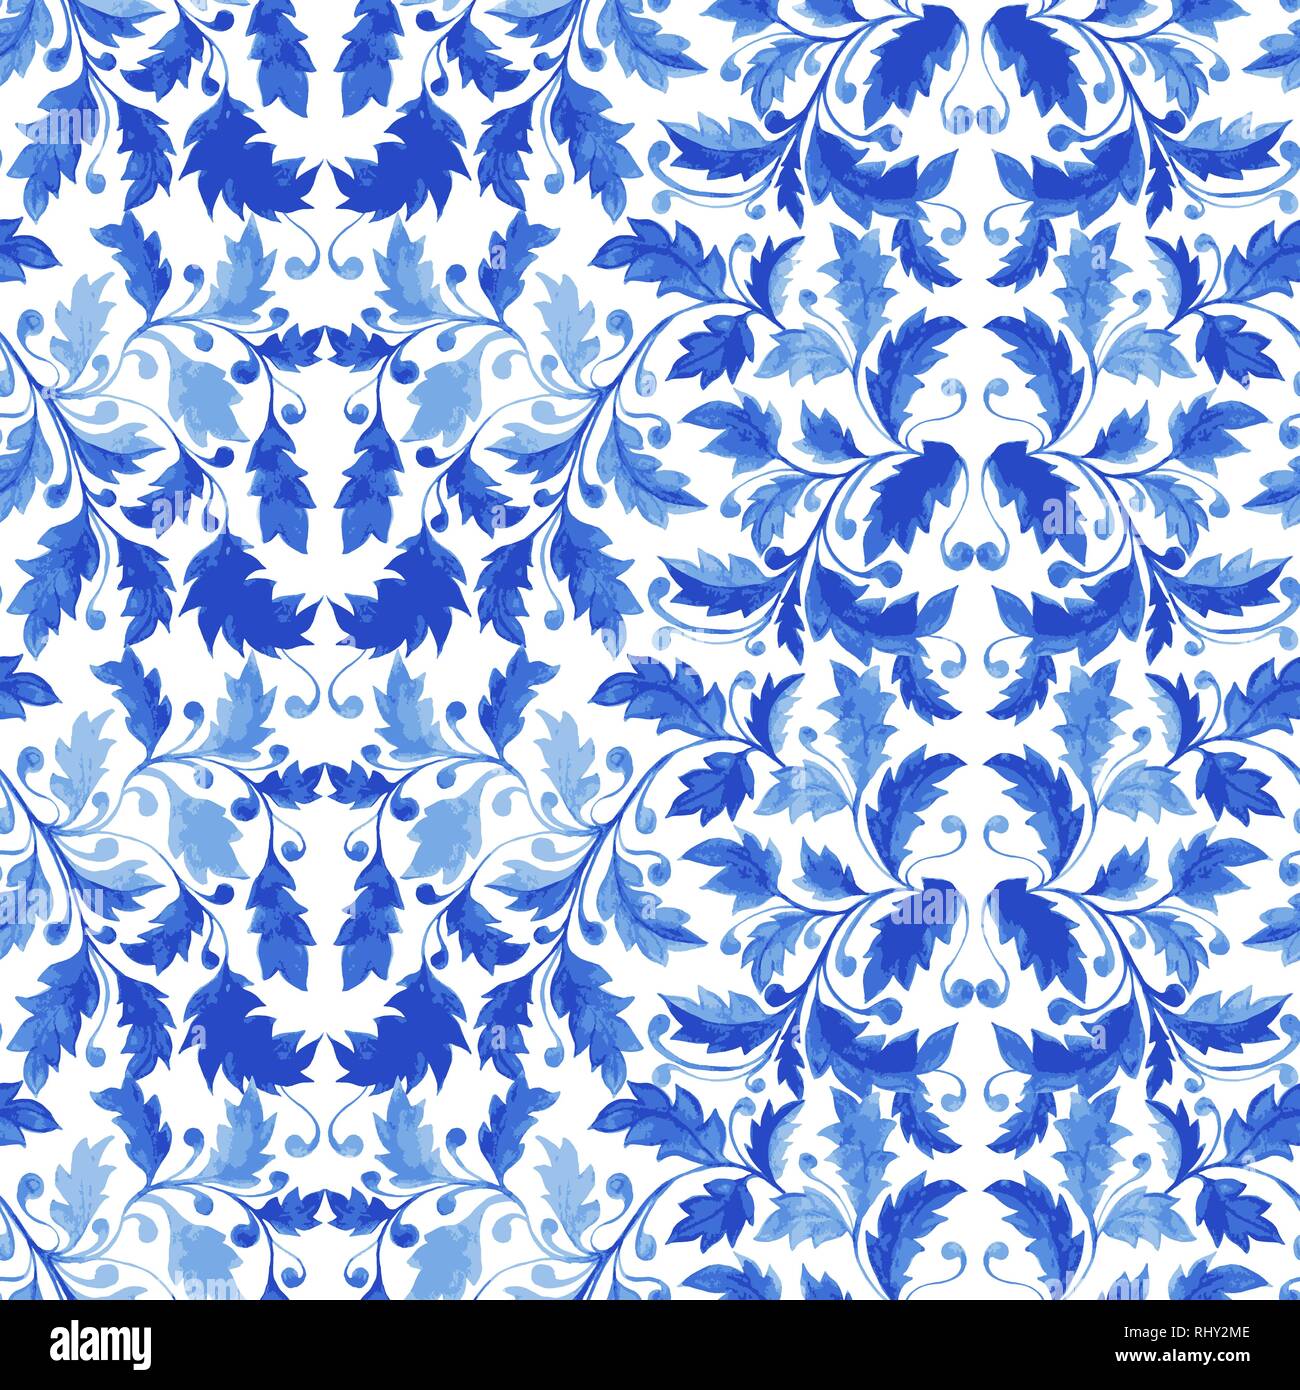 Bleu carreaux portugais traditionnels ornement Azulejo, Vector Seamless  Pattern avec feuilles, de boucles et de feuillage stylisé Image Vectorielle  Stock - Alamy